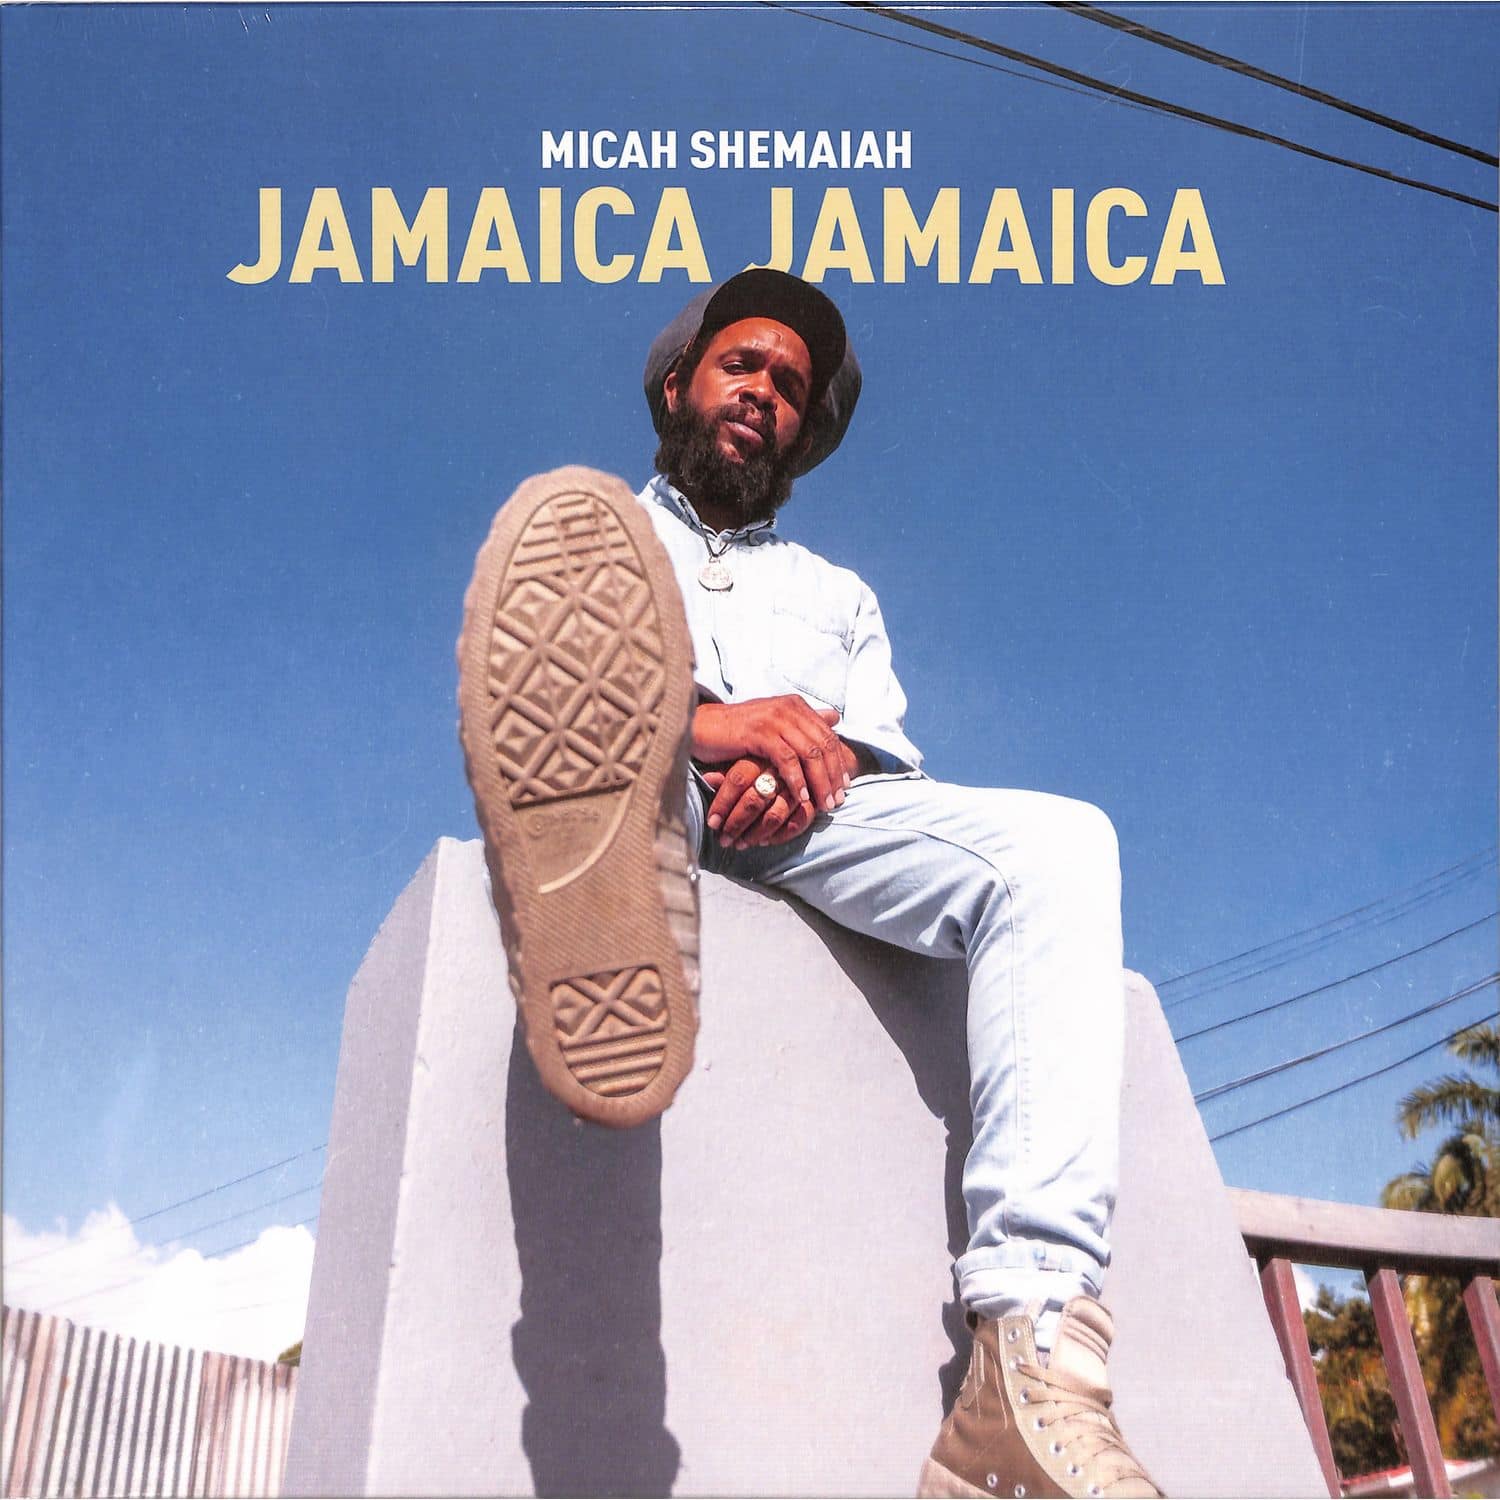  Micah Shemaiah - JAMAICA JAMAICA 